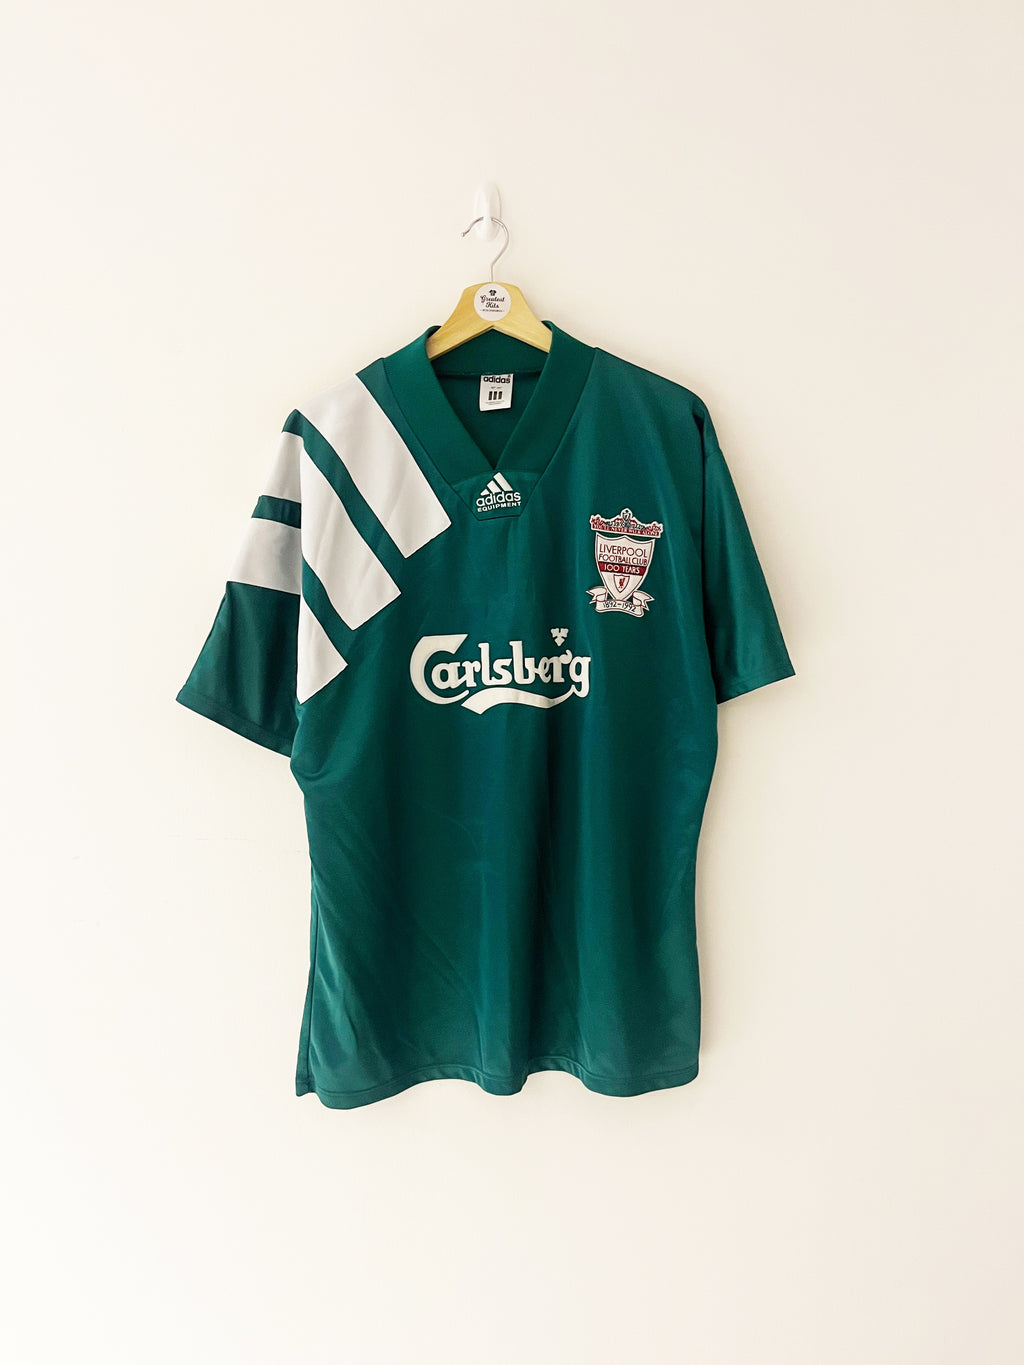 1992/93 Liverpool Away Centenary Shirt (L) 8.5/10